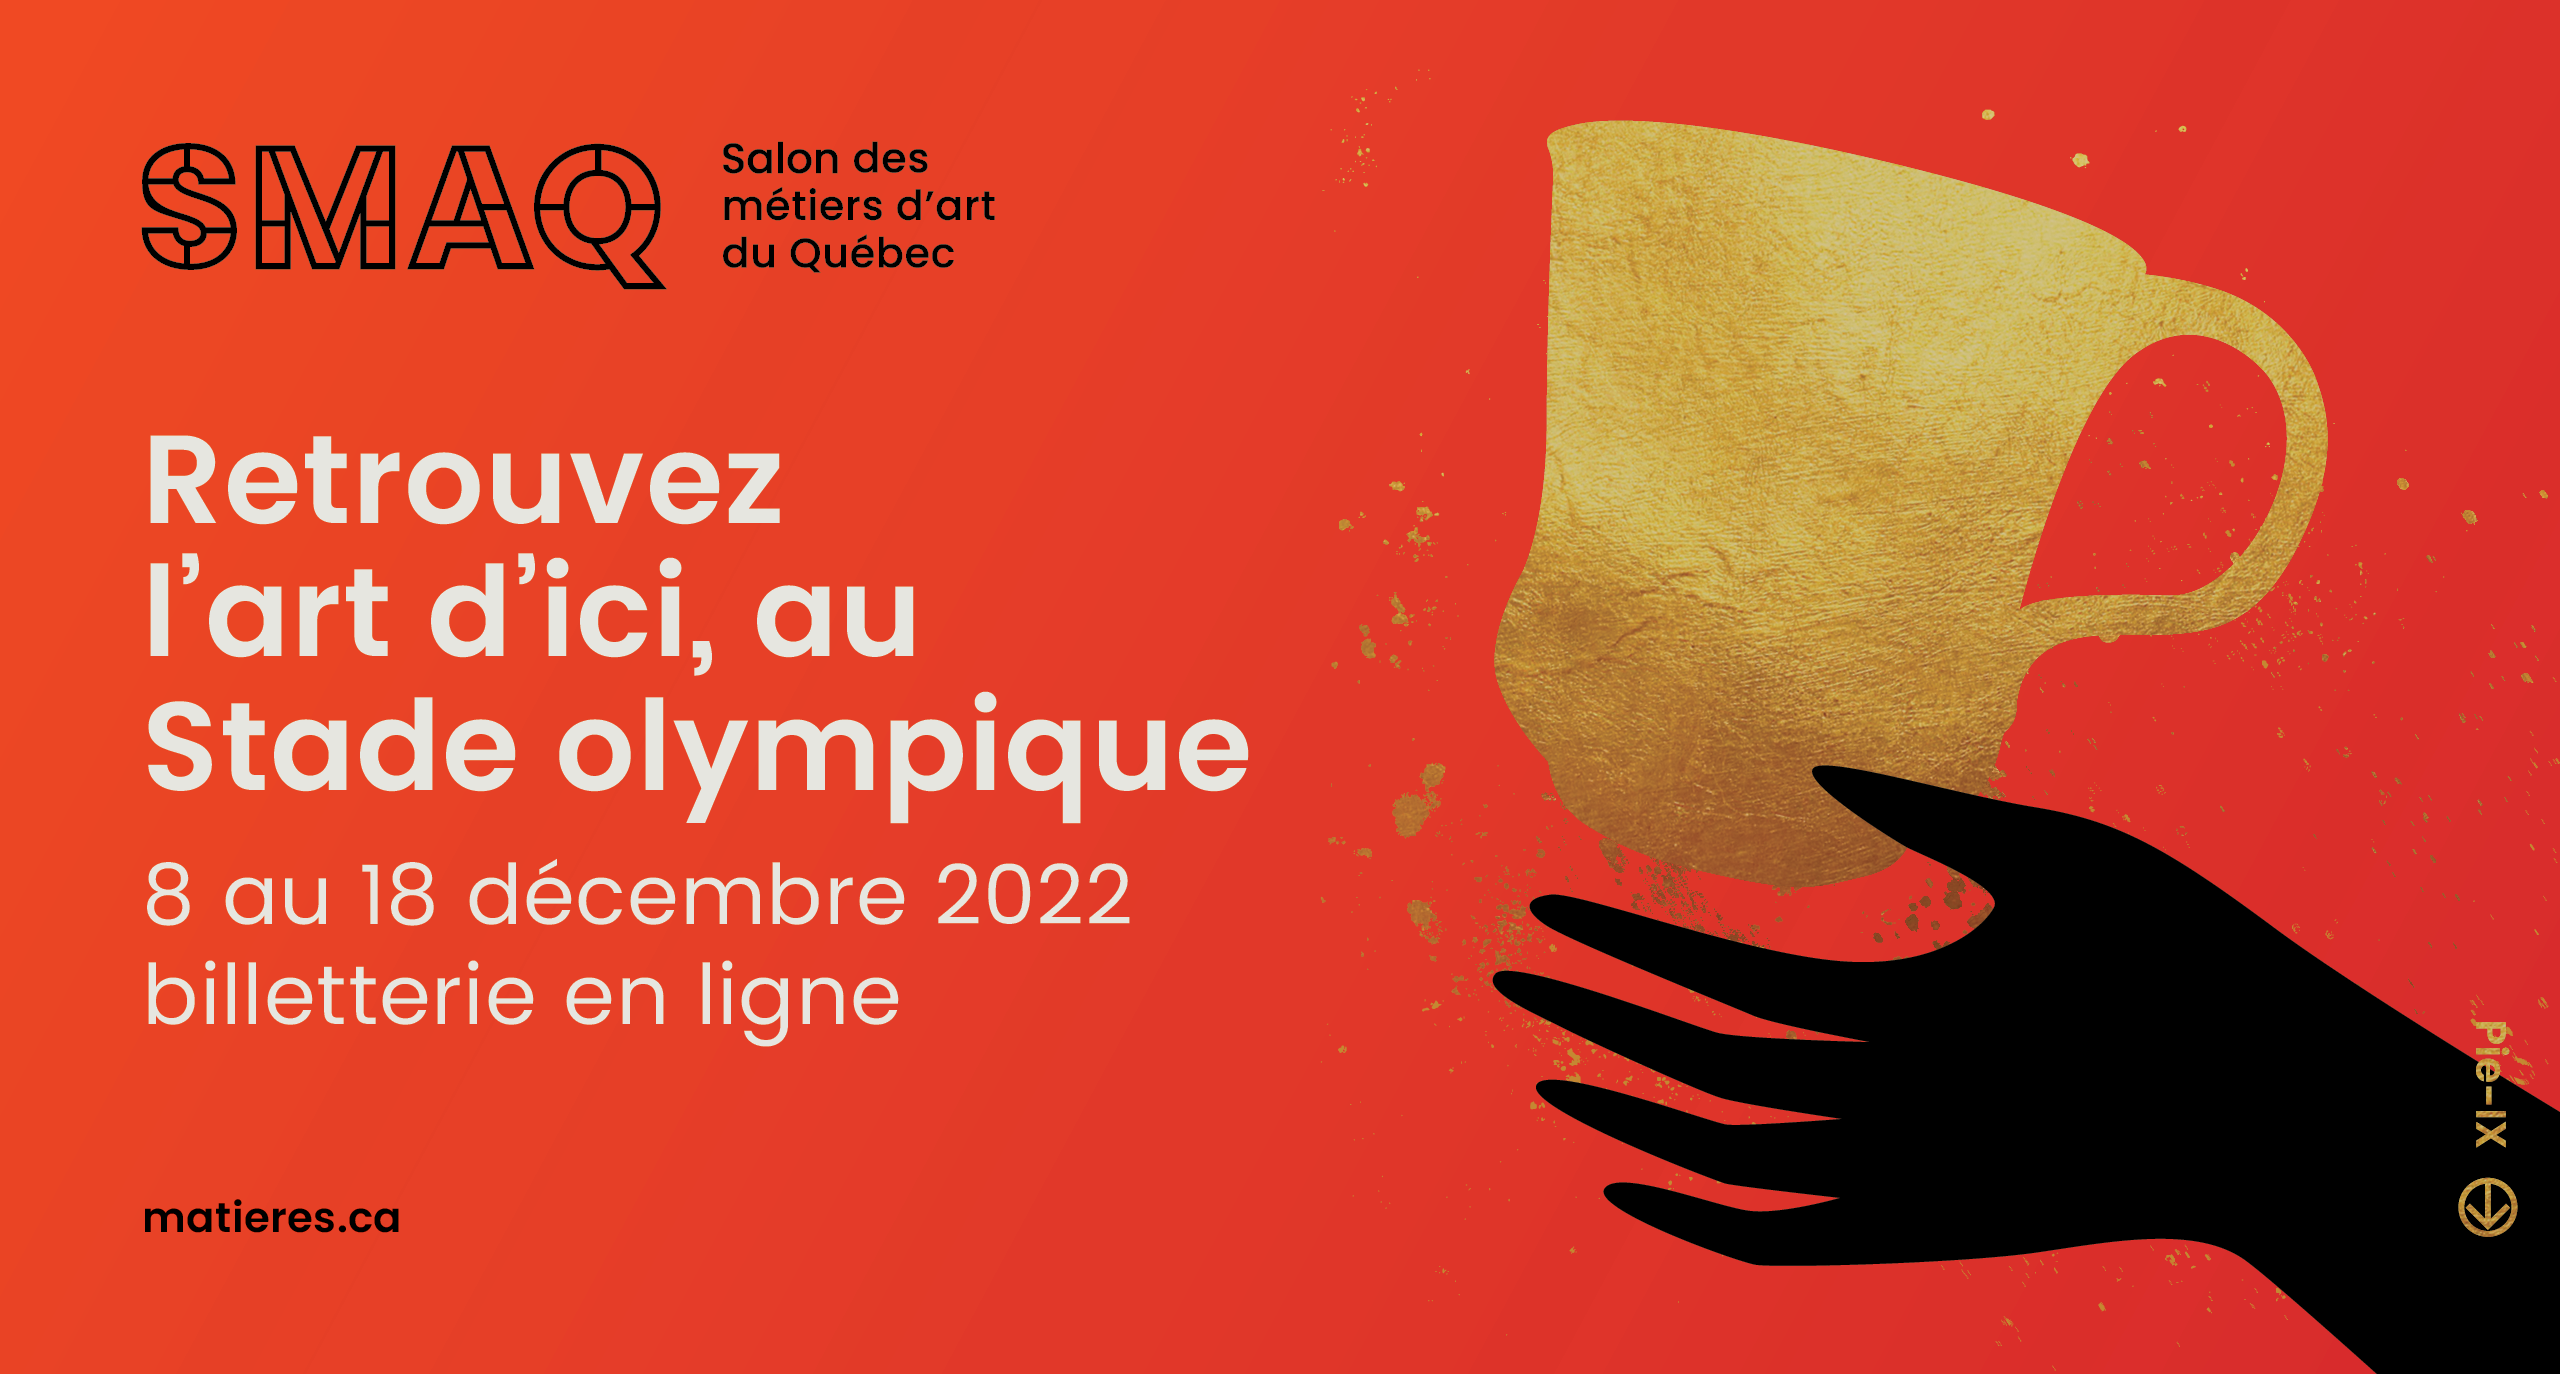 Retrouvez l'art d'ici au stade olympique #SMAQ22 du 8 au 18 décembre 2022